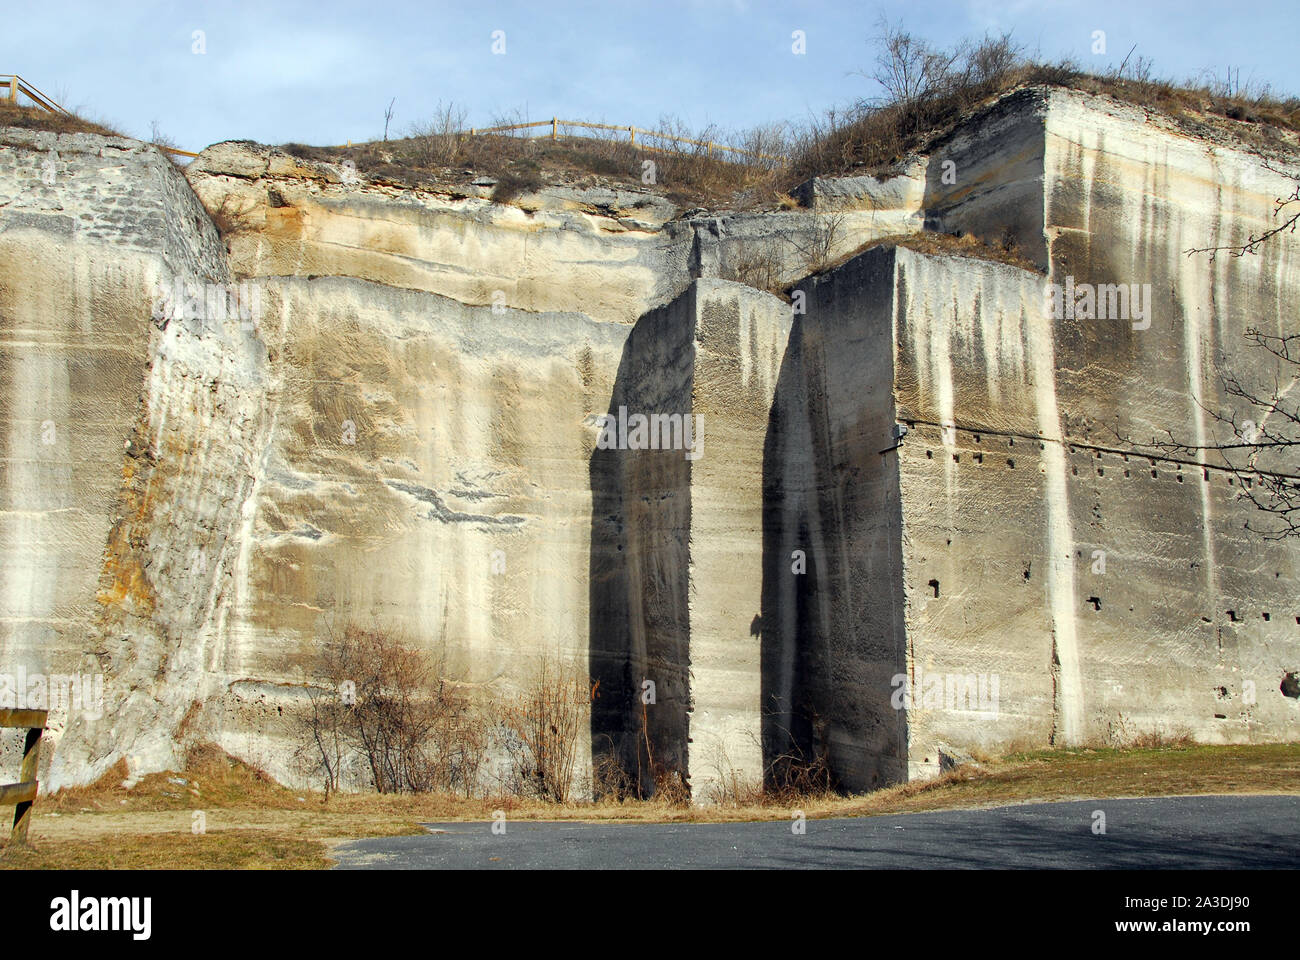 Former quarry, Fertőrákos, Győr-Moson-Sopron county, Hungary, Magyarország, Europe Stock Photo